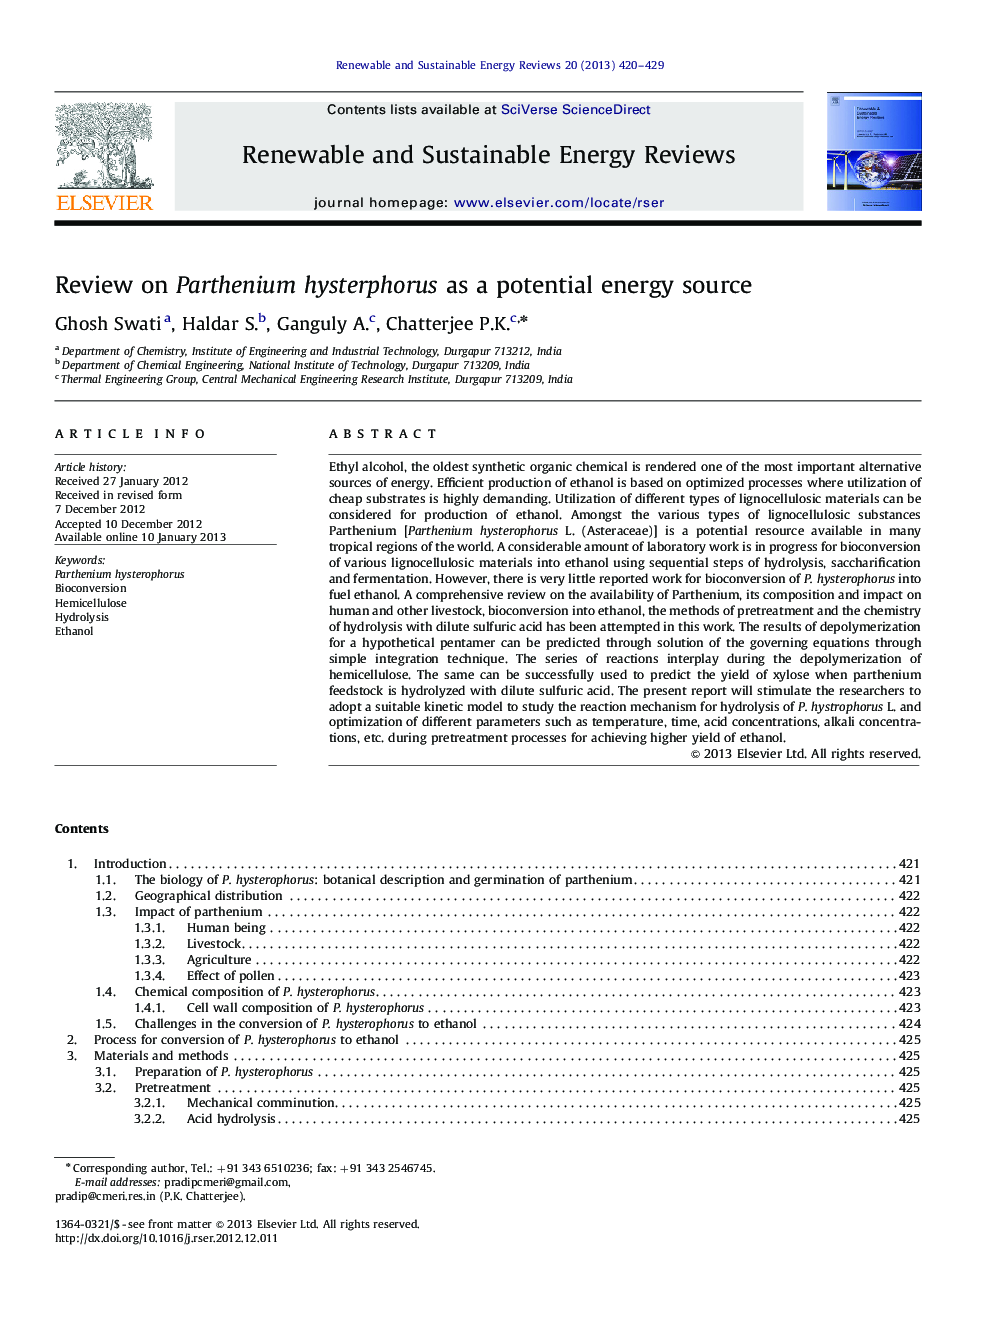 بررسی هیستفوروس پارتنیوم به عنوان یک منبع انرژی بالقوه 